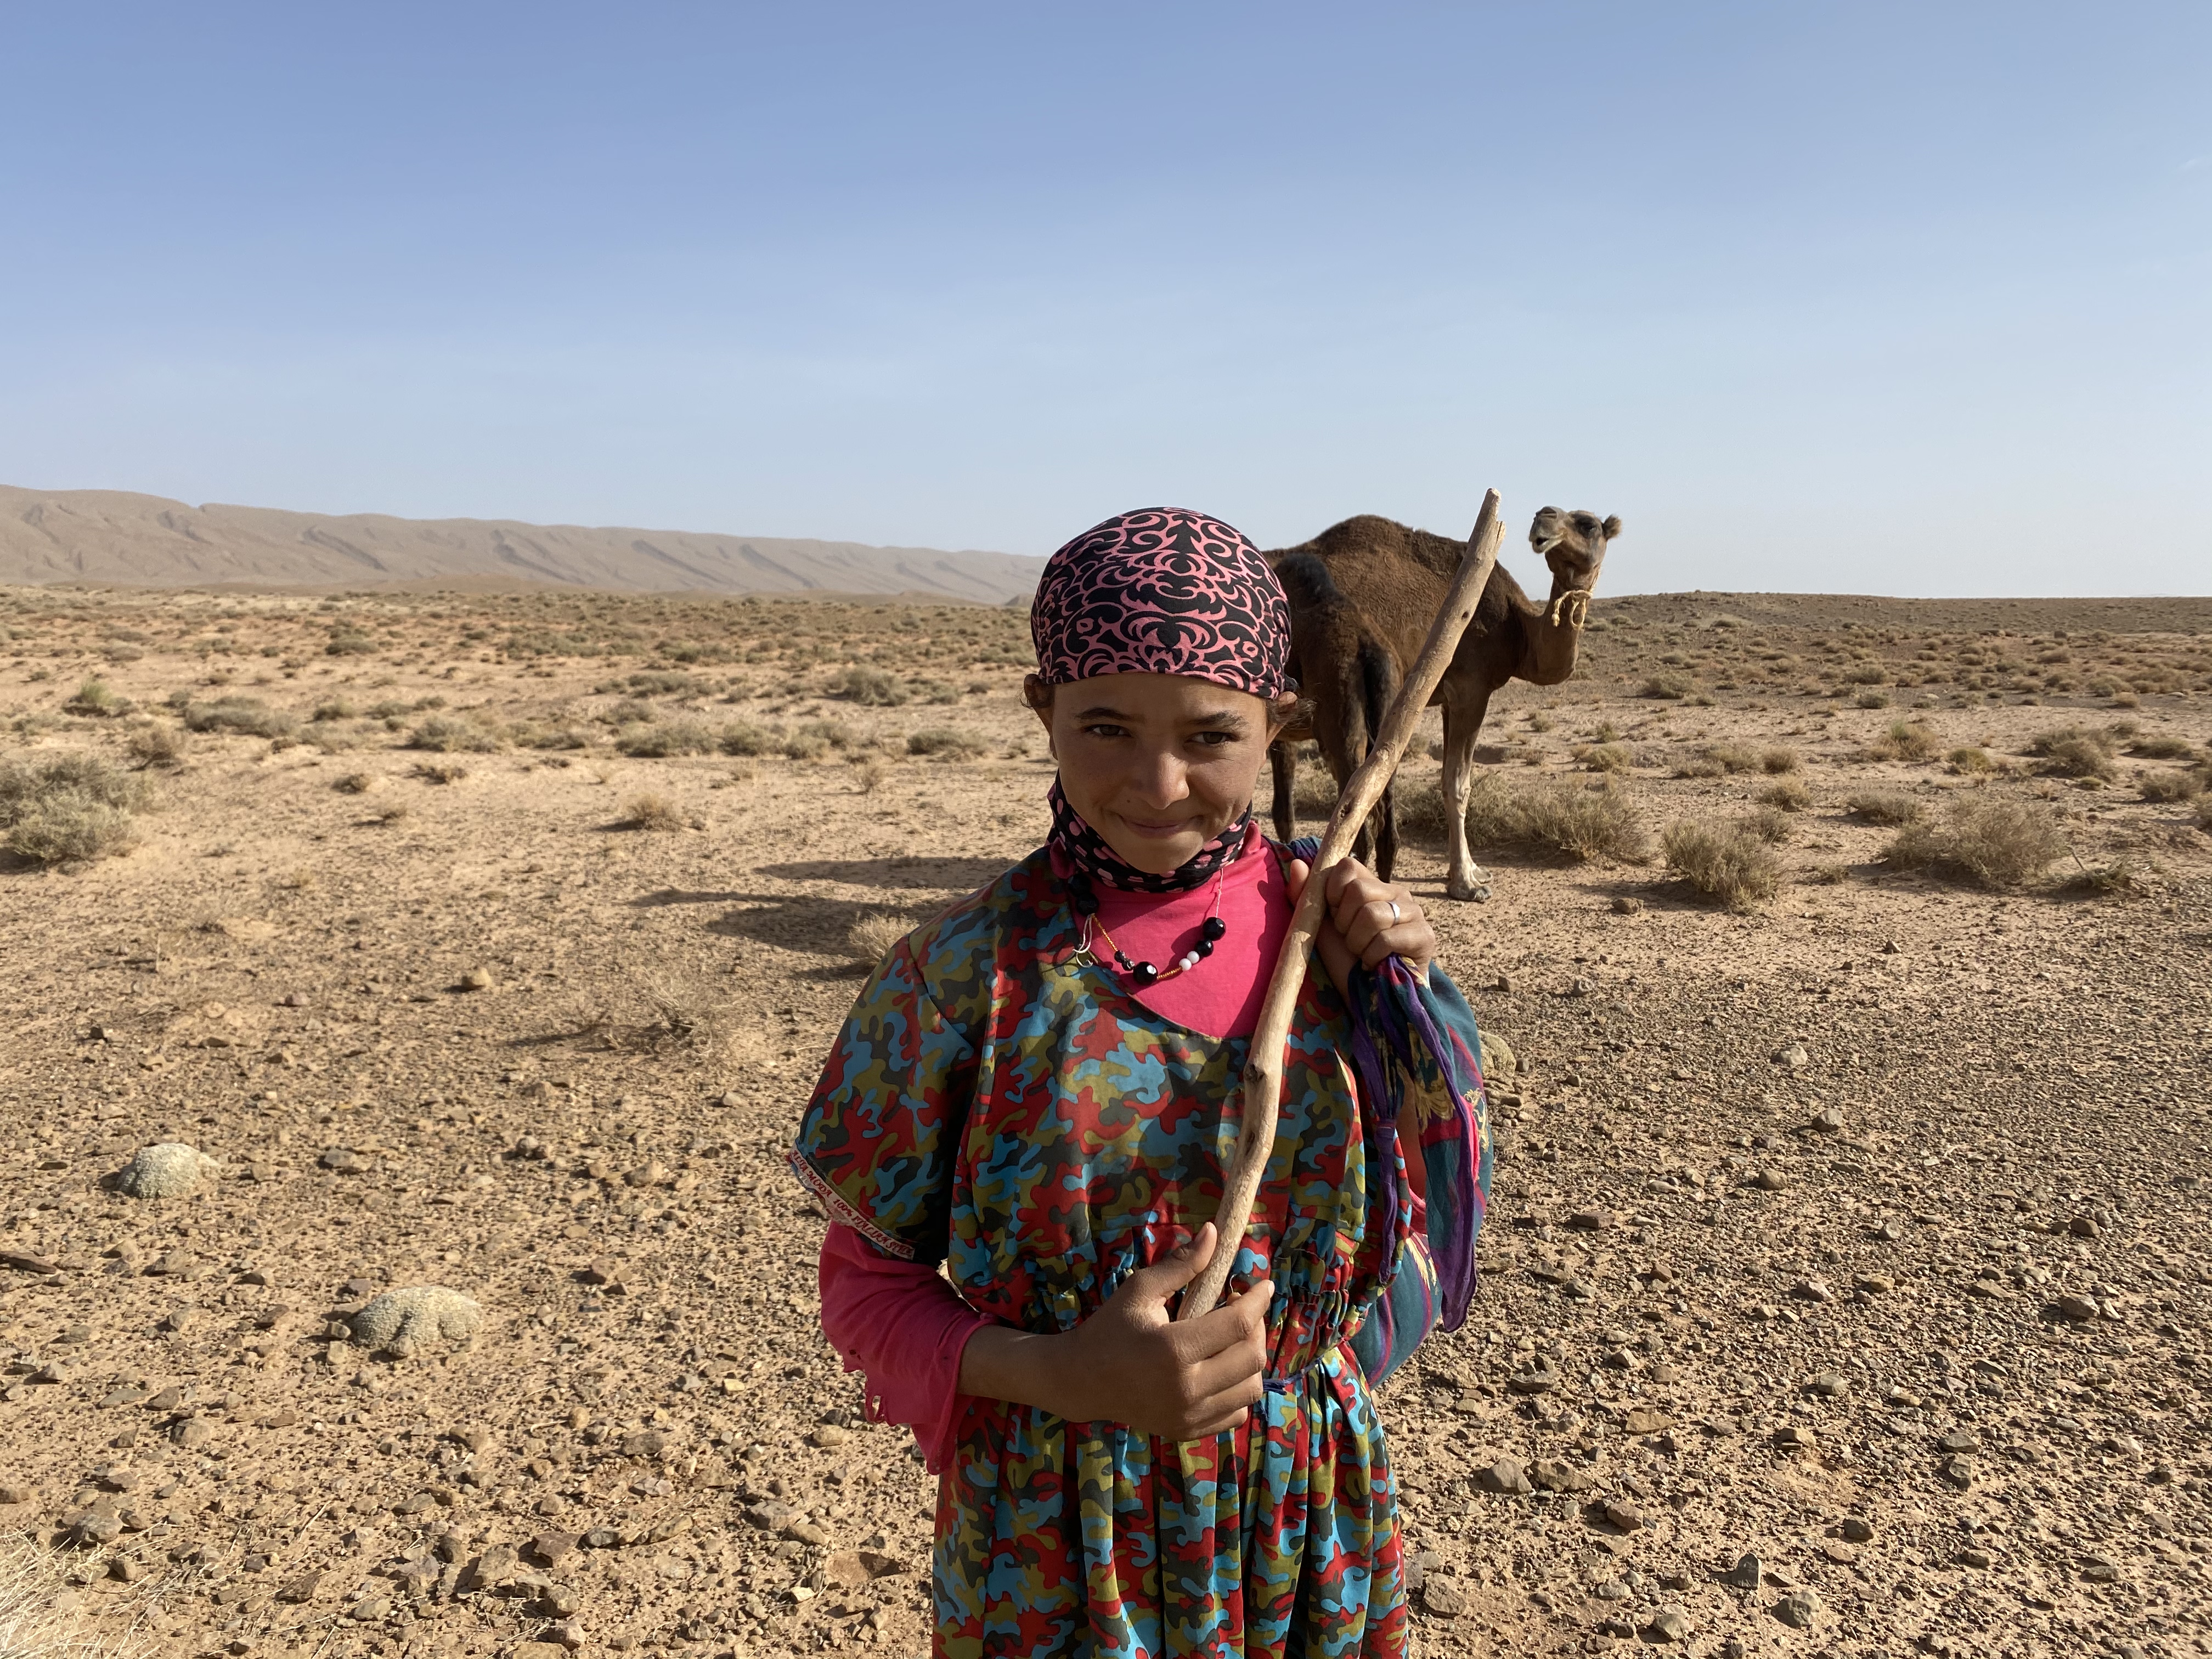 Nomad girl herding her camels.